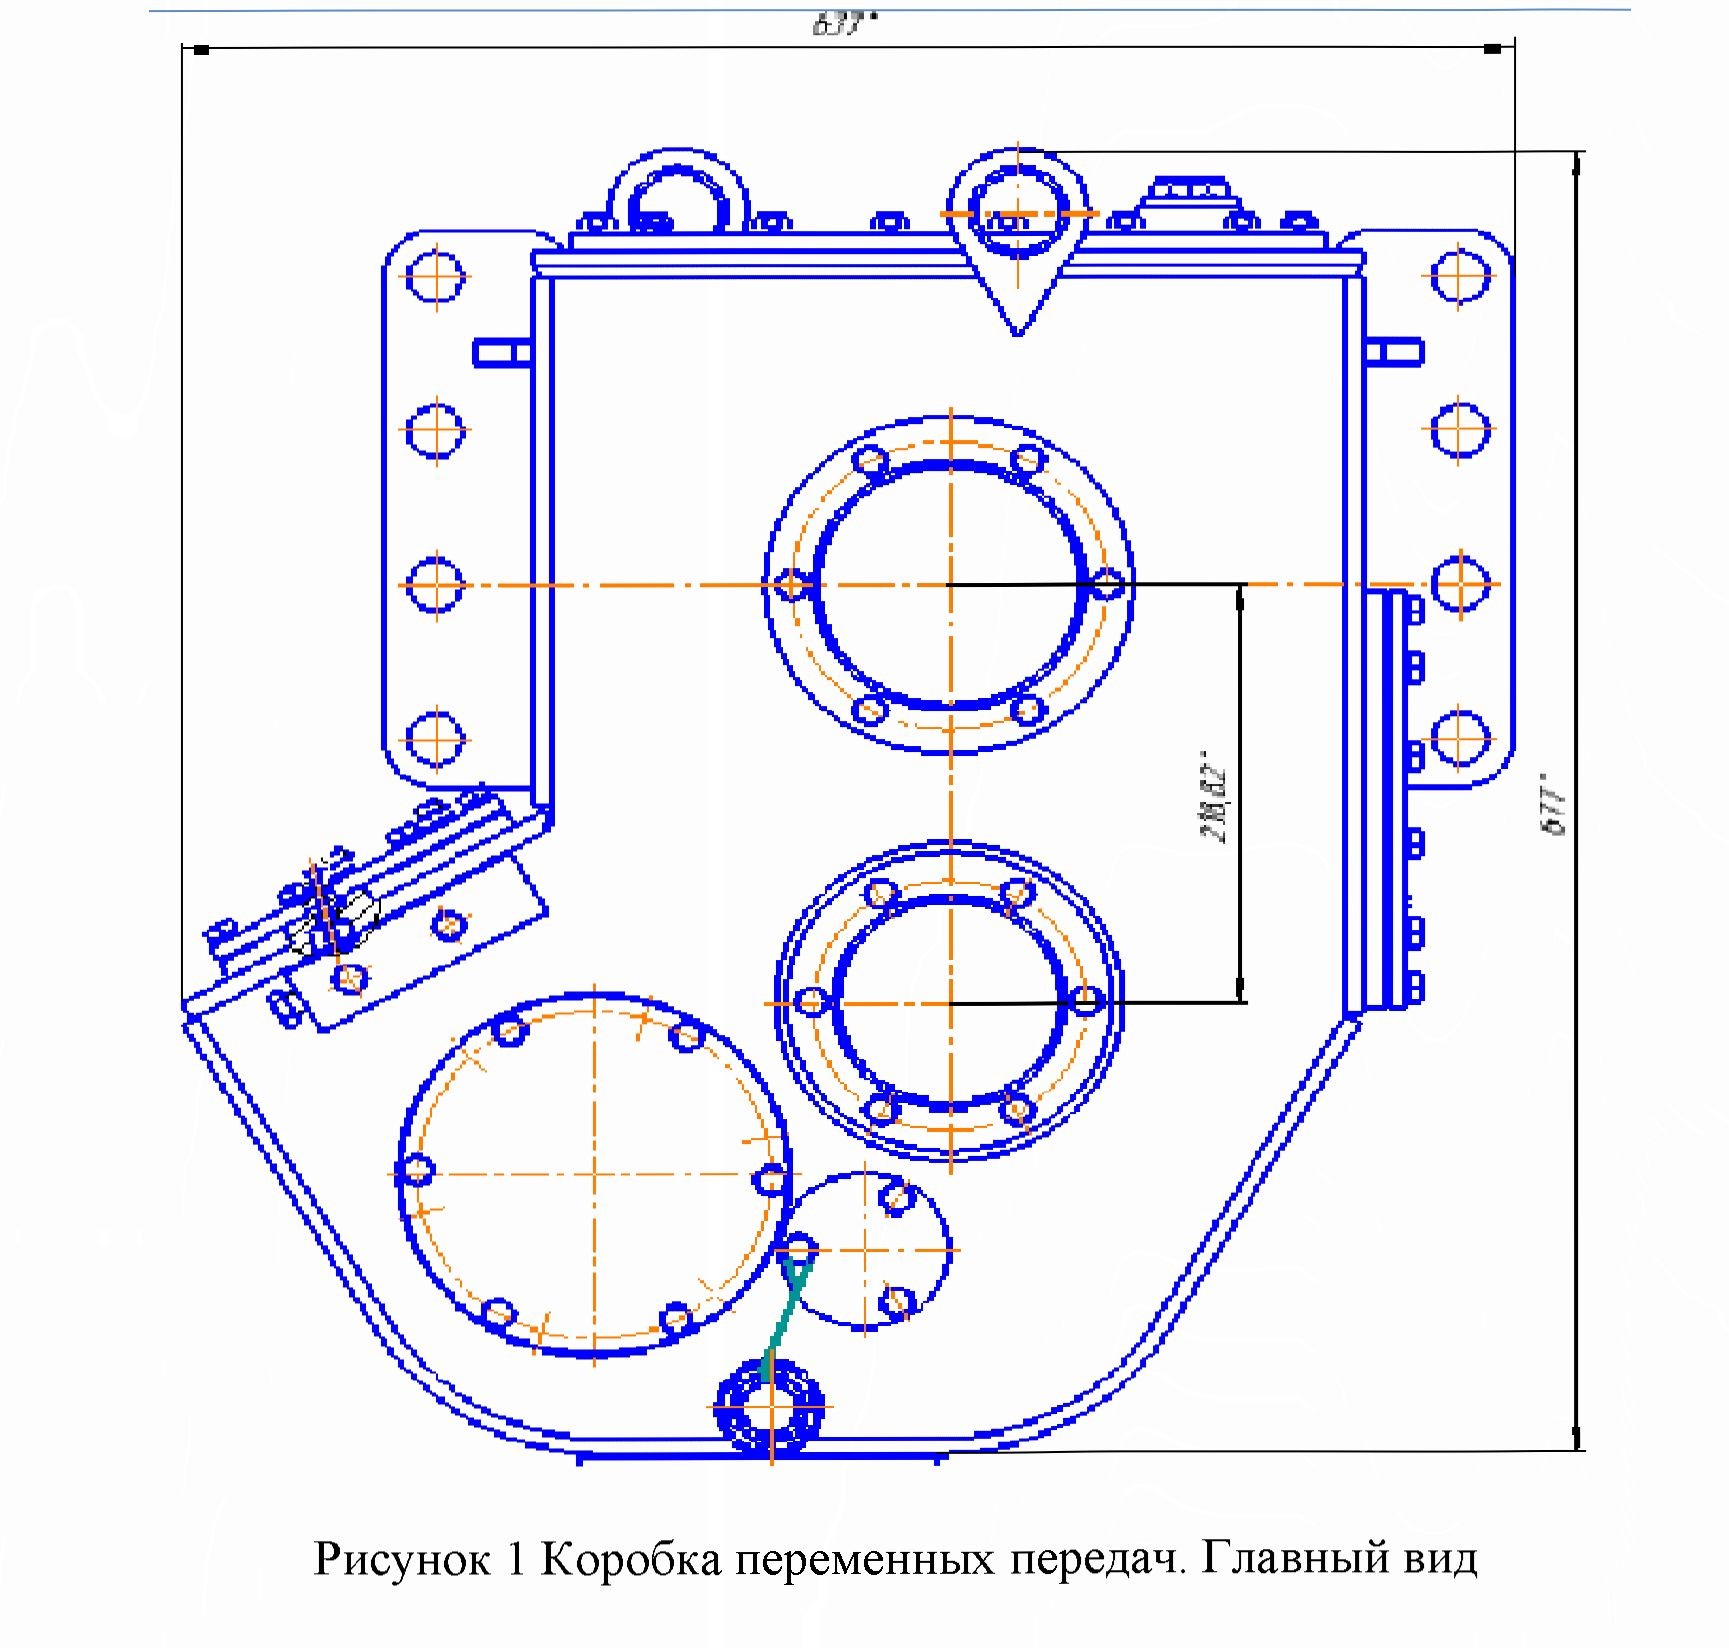 Проектирование стенда для обкатки и испытания коробки перемены передач подьемника тракторного ПТП - 40 в условиях АО «ПЗТМ»